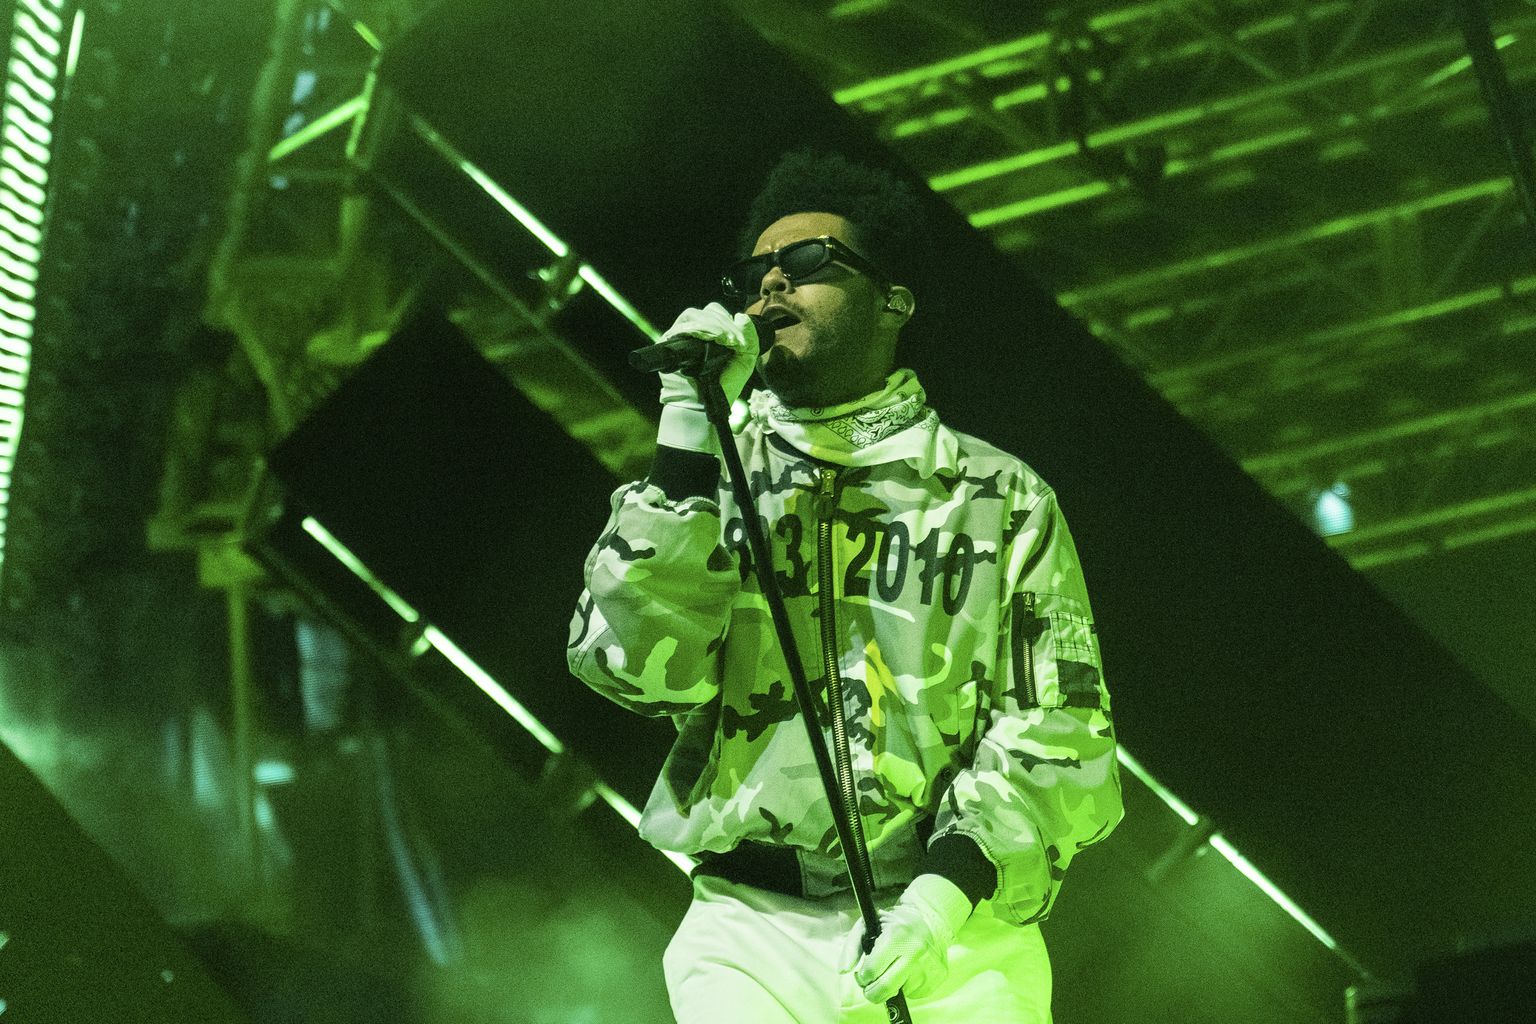 The Weeknd šī gada 23. aprīlī koncertē Koačellas mūzikas un mākslas festivālā kopā ar ierakstu producentu un dīdžeju Metro Boomin, kuru šovasar dzirdēsim festivālā "Positivus".